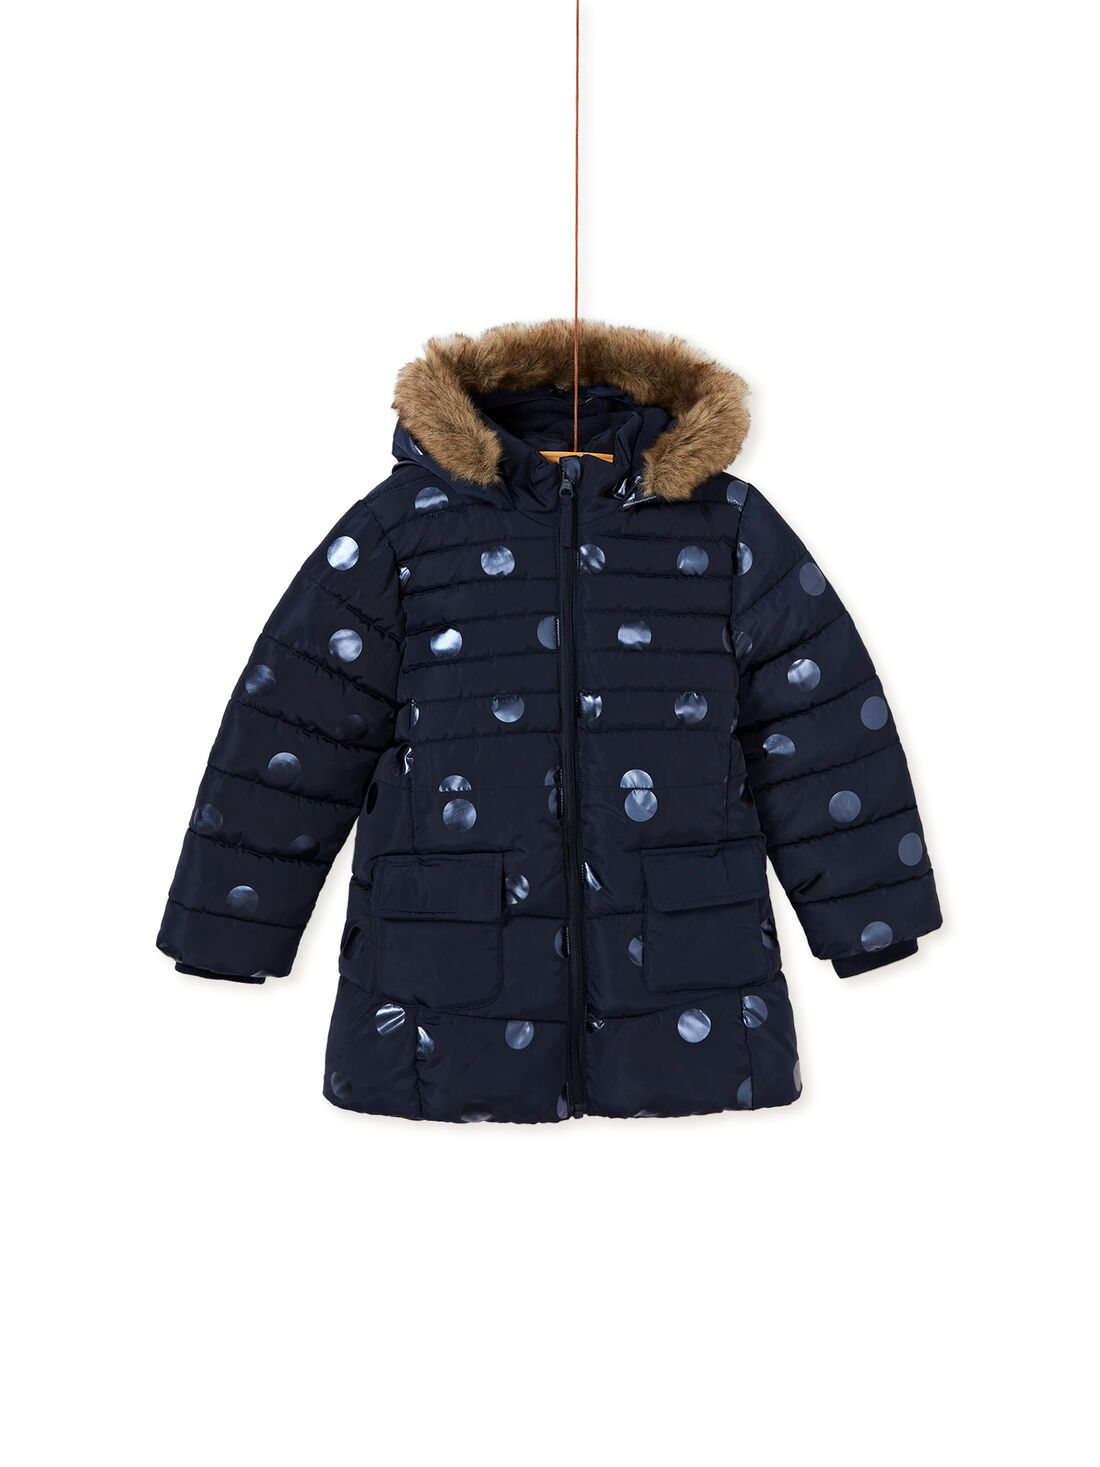 Enfants à Capuche Gilet Veste Matelassée Parka Garçons Manteau d'hiver Outwear pour l'âge 6-17Y 